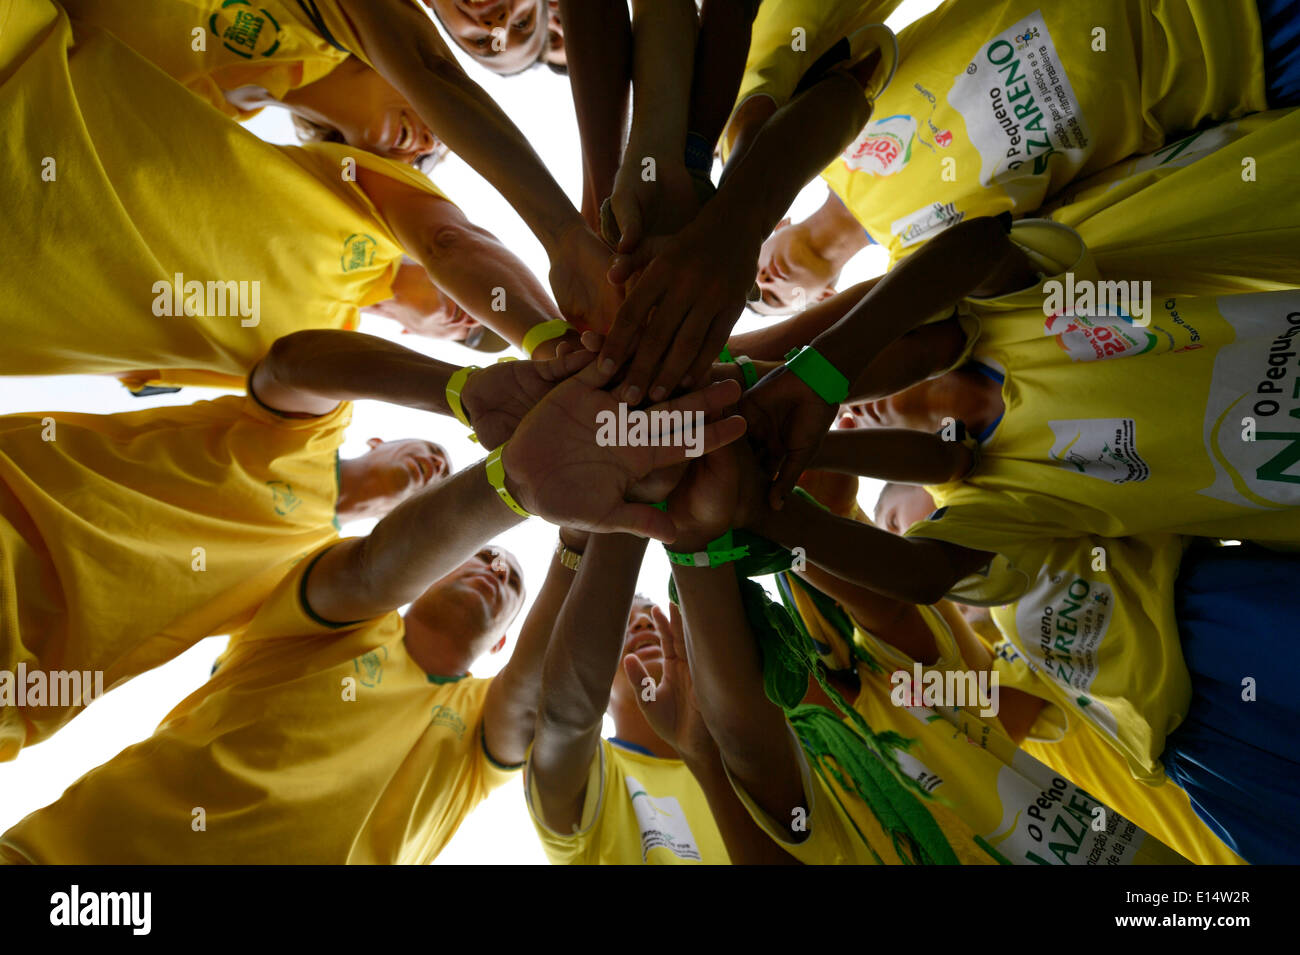 L'équipe de soccer de motiver eux-mêmes dans un cercle avant un match de Coupe du monde, les enfants des rues de Rio de Janeiro, 2014 Banque D'Images